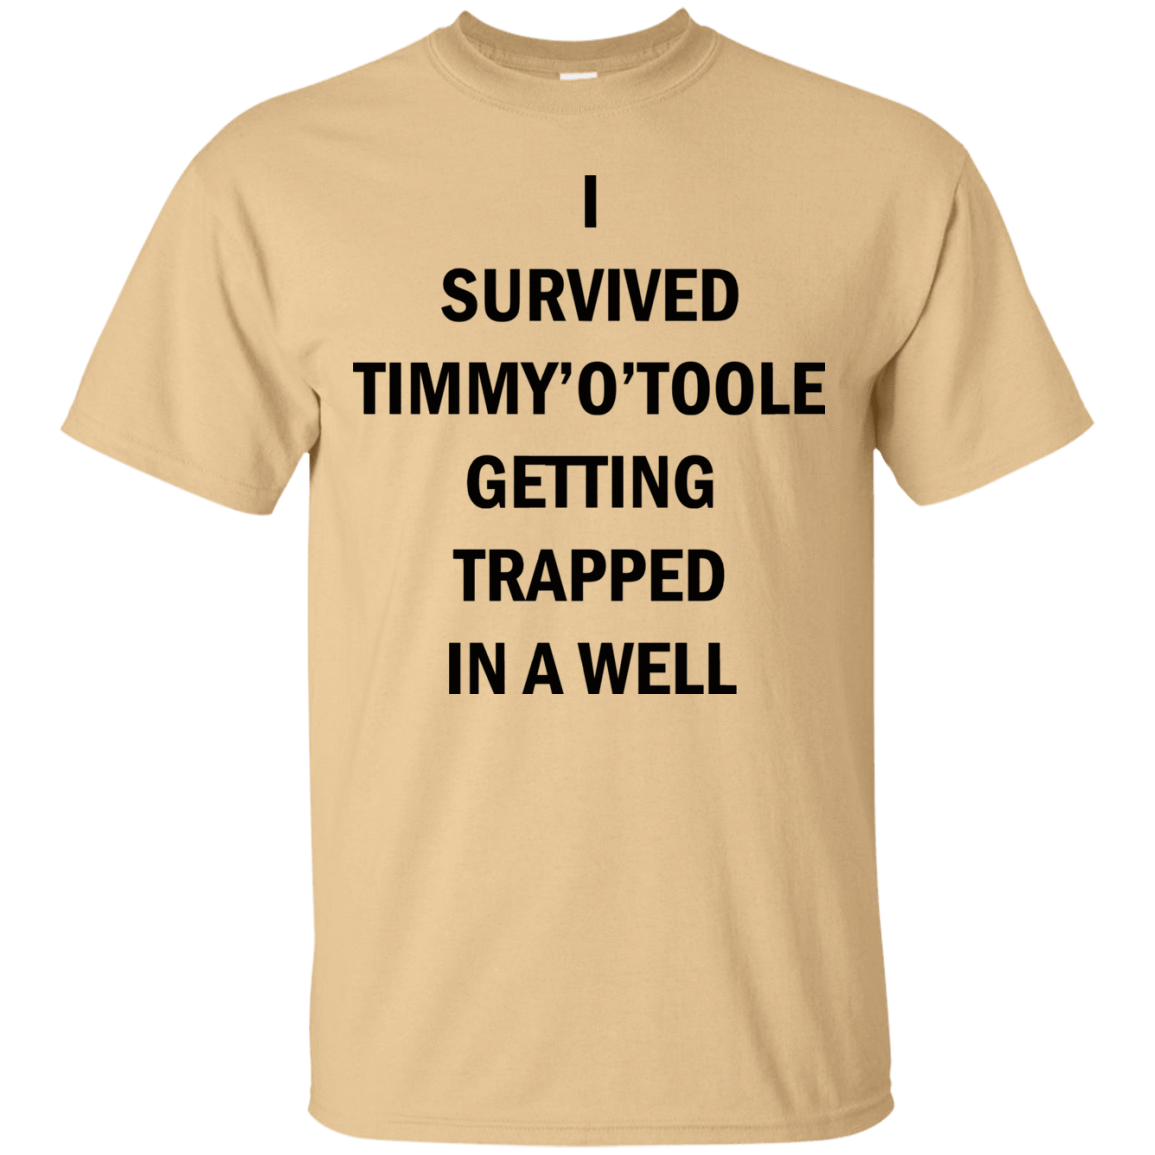 T-Shirts Vegas Gold / Small Timmy Otoole T-Shirt